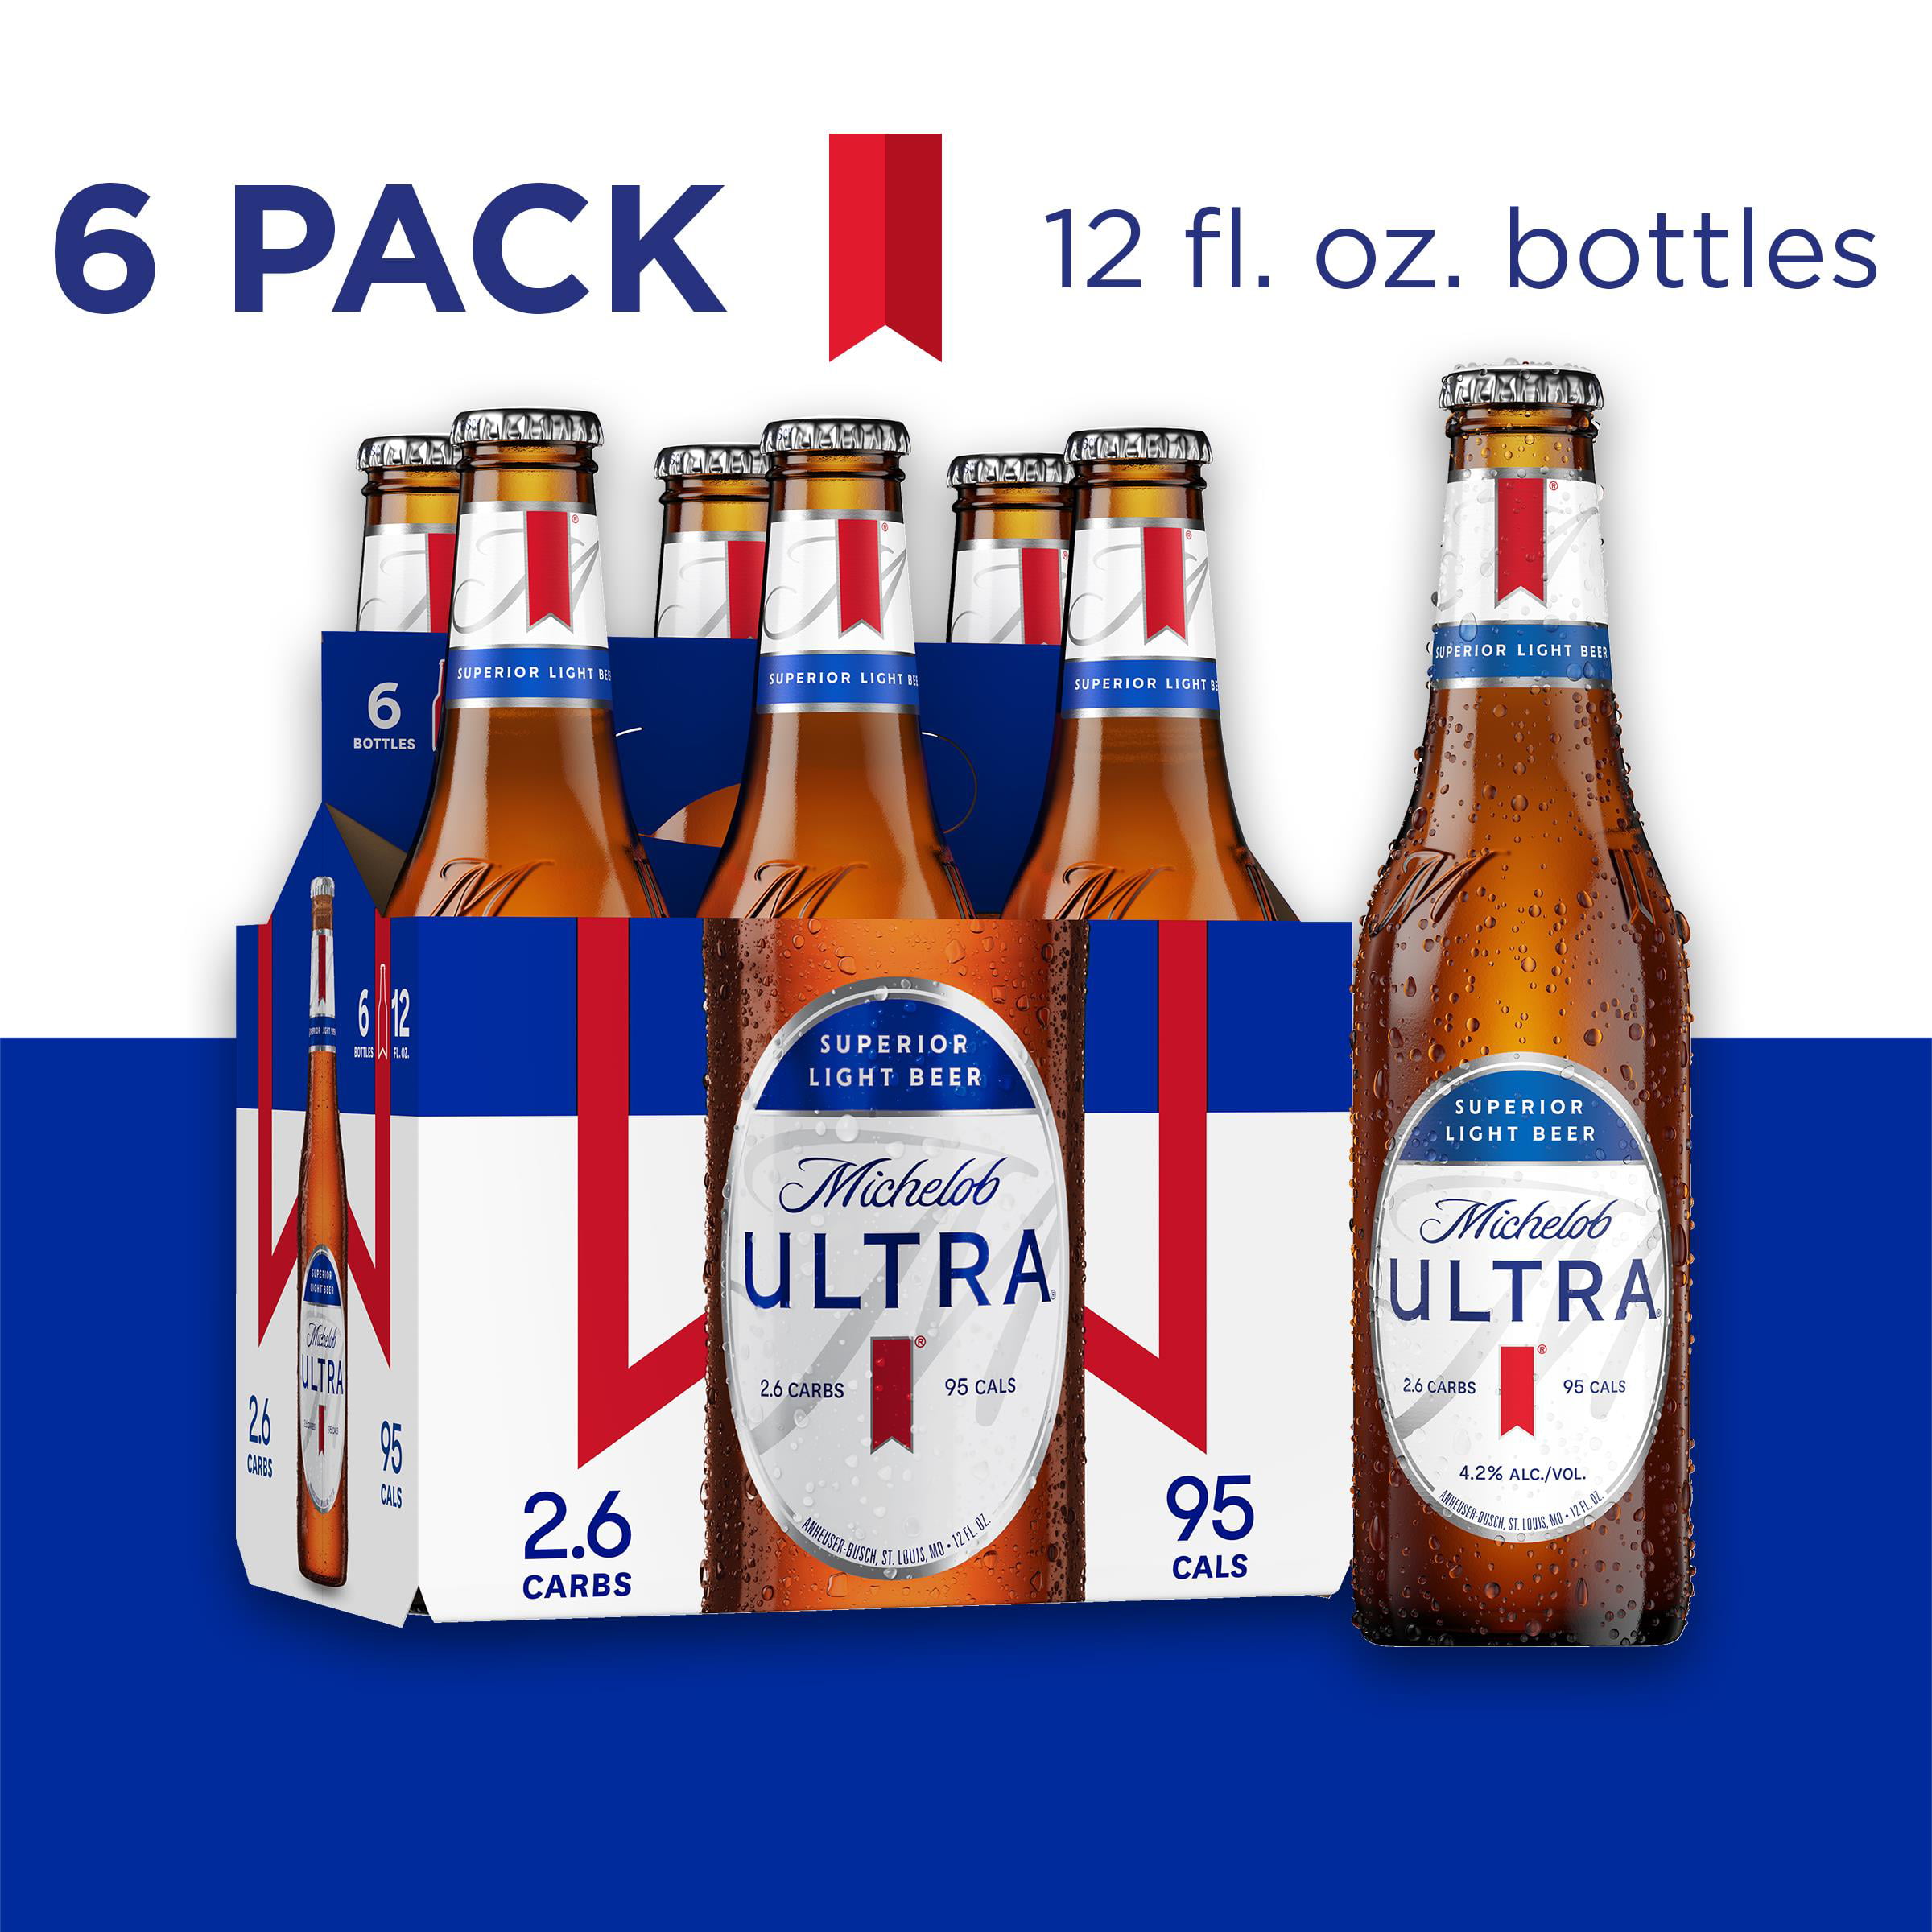 Michelob ULTRA Light Beer, 6 Pack Beer, 12 FL OZ Bottles - Walmart.com ...